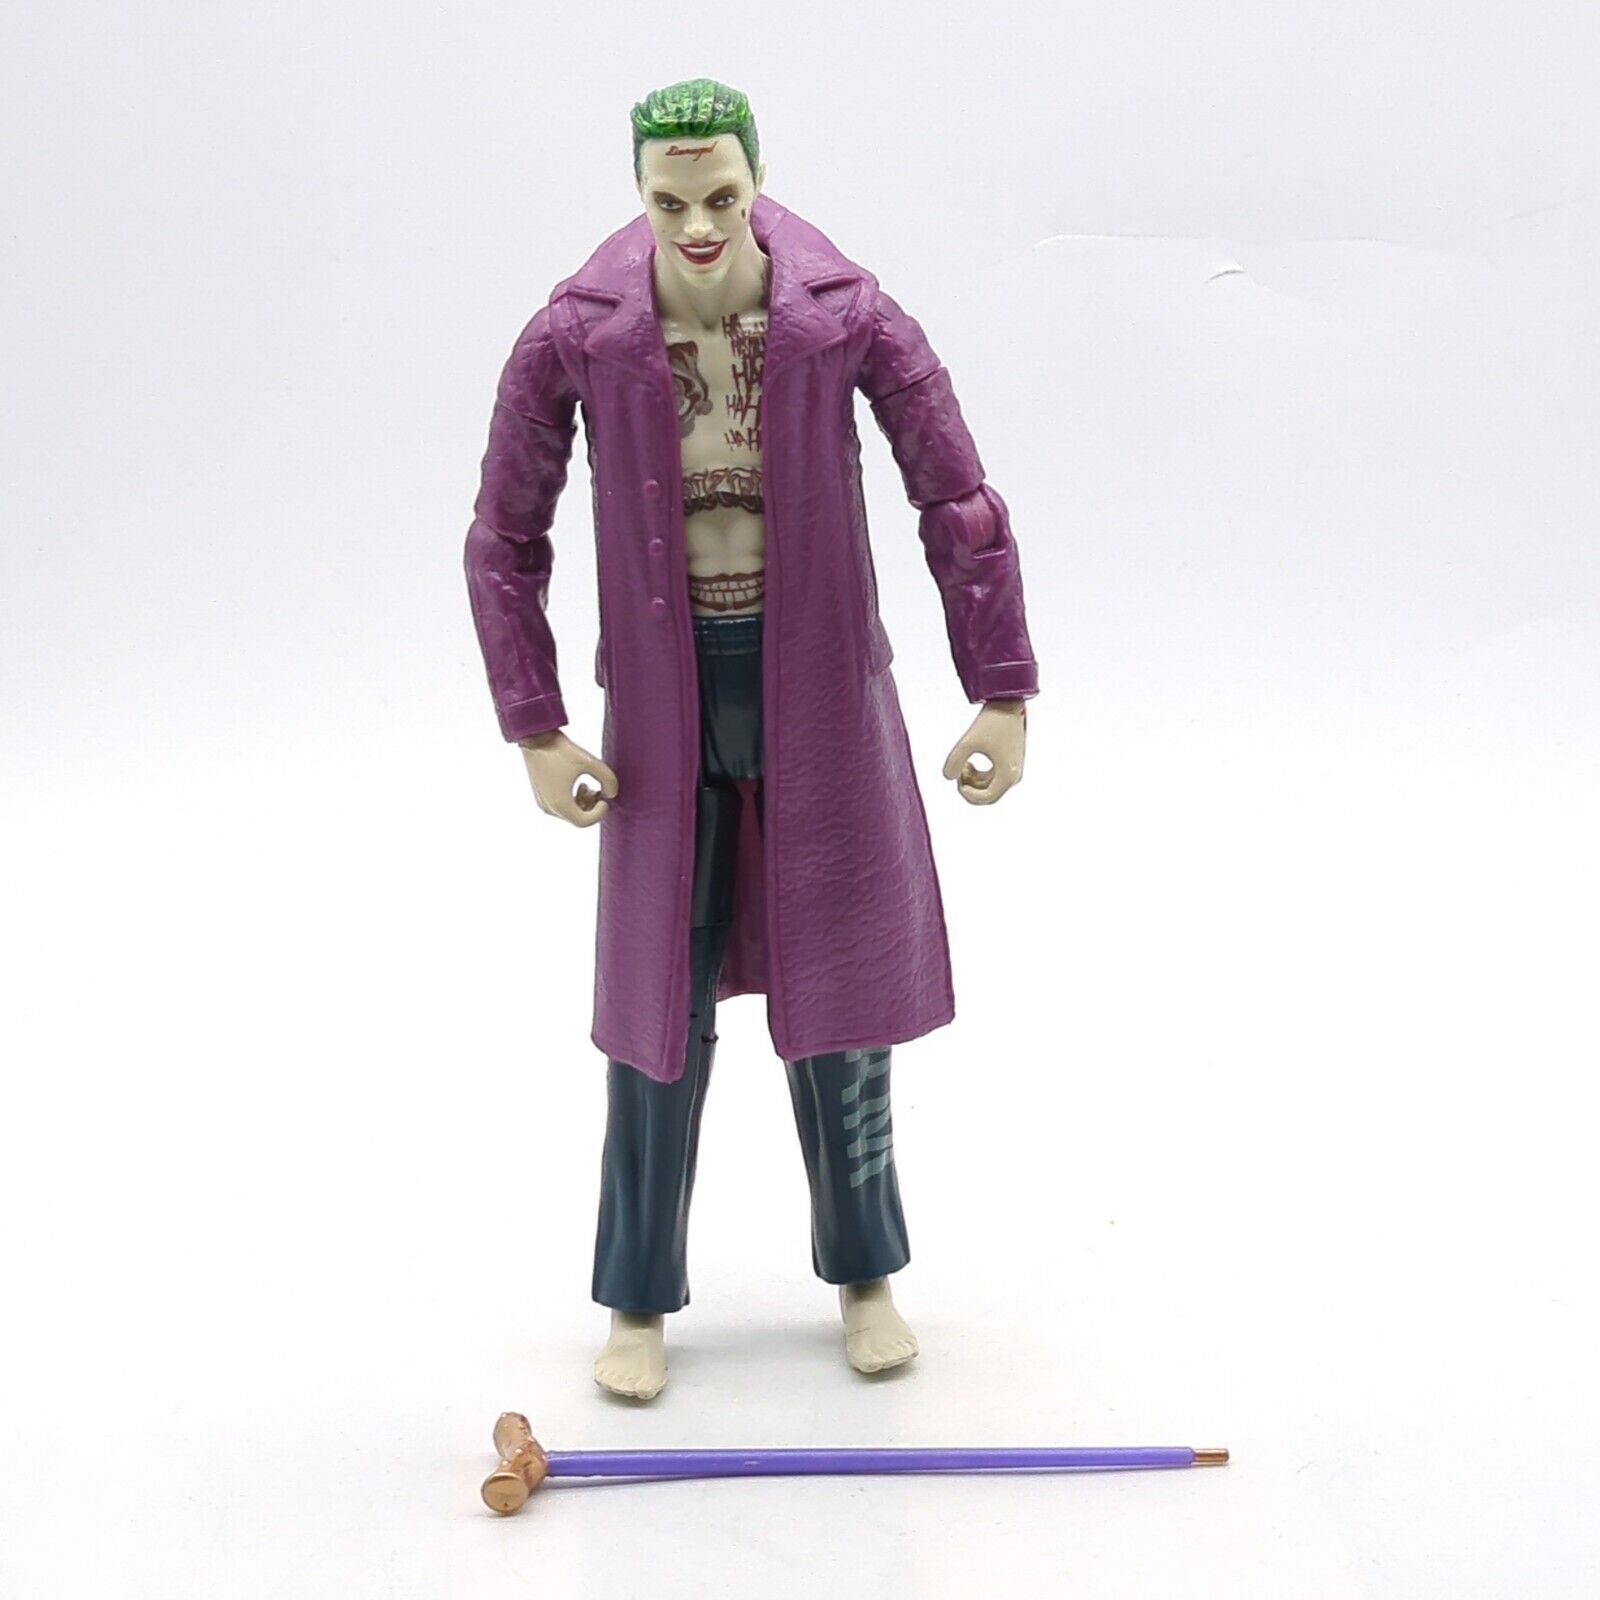 Mattel DC Comics Multiverse Suicide Squad The Joker 6" Action Figure 2016